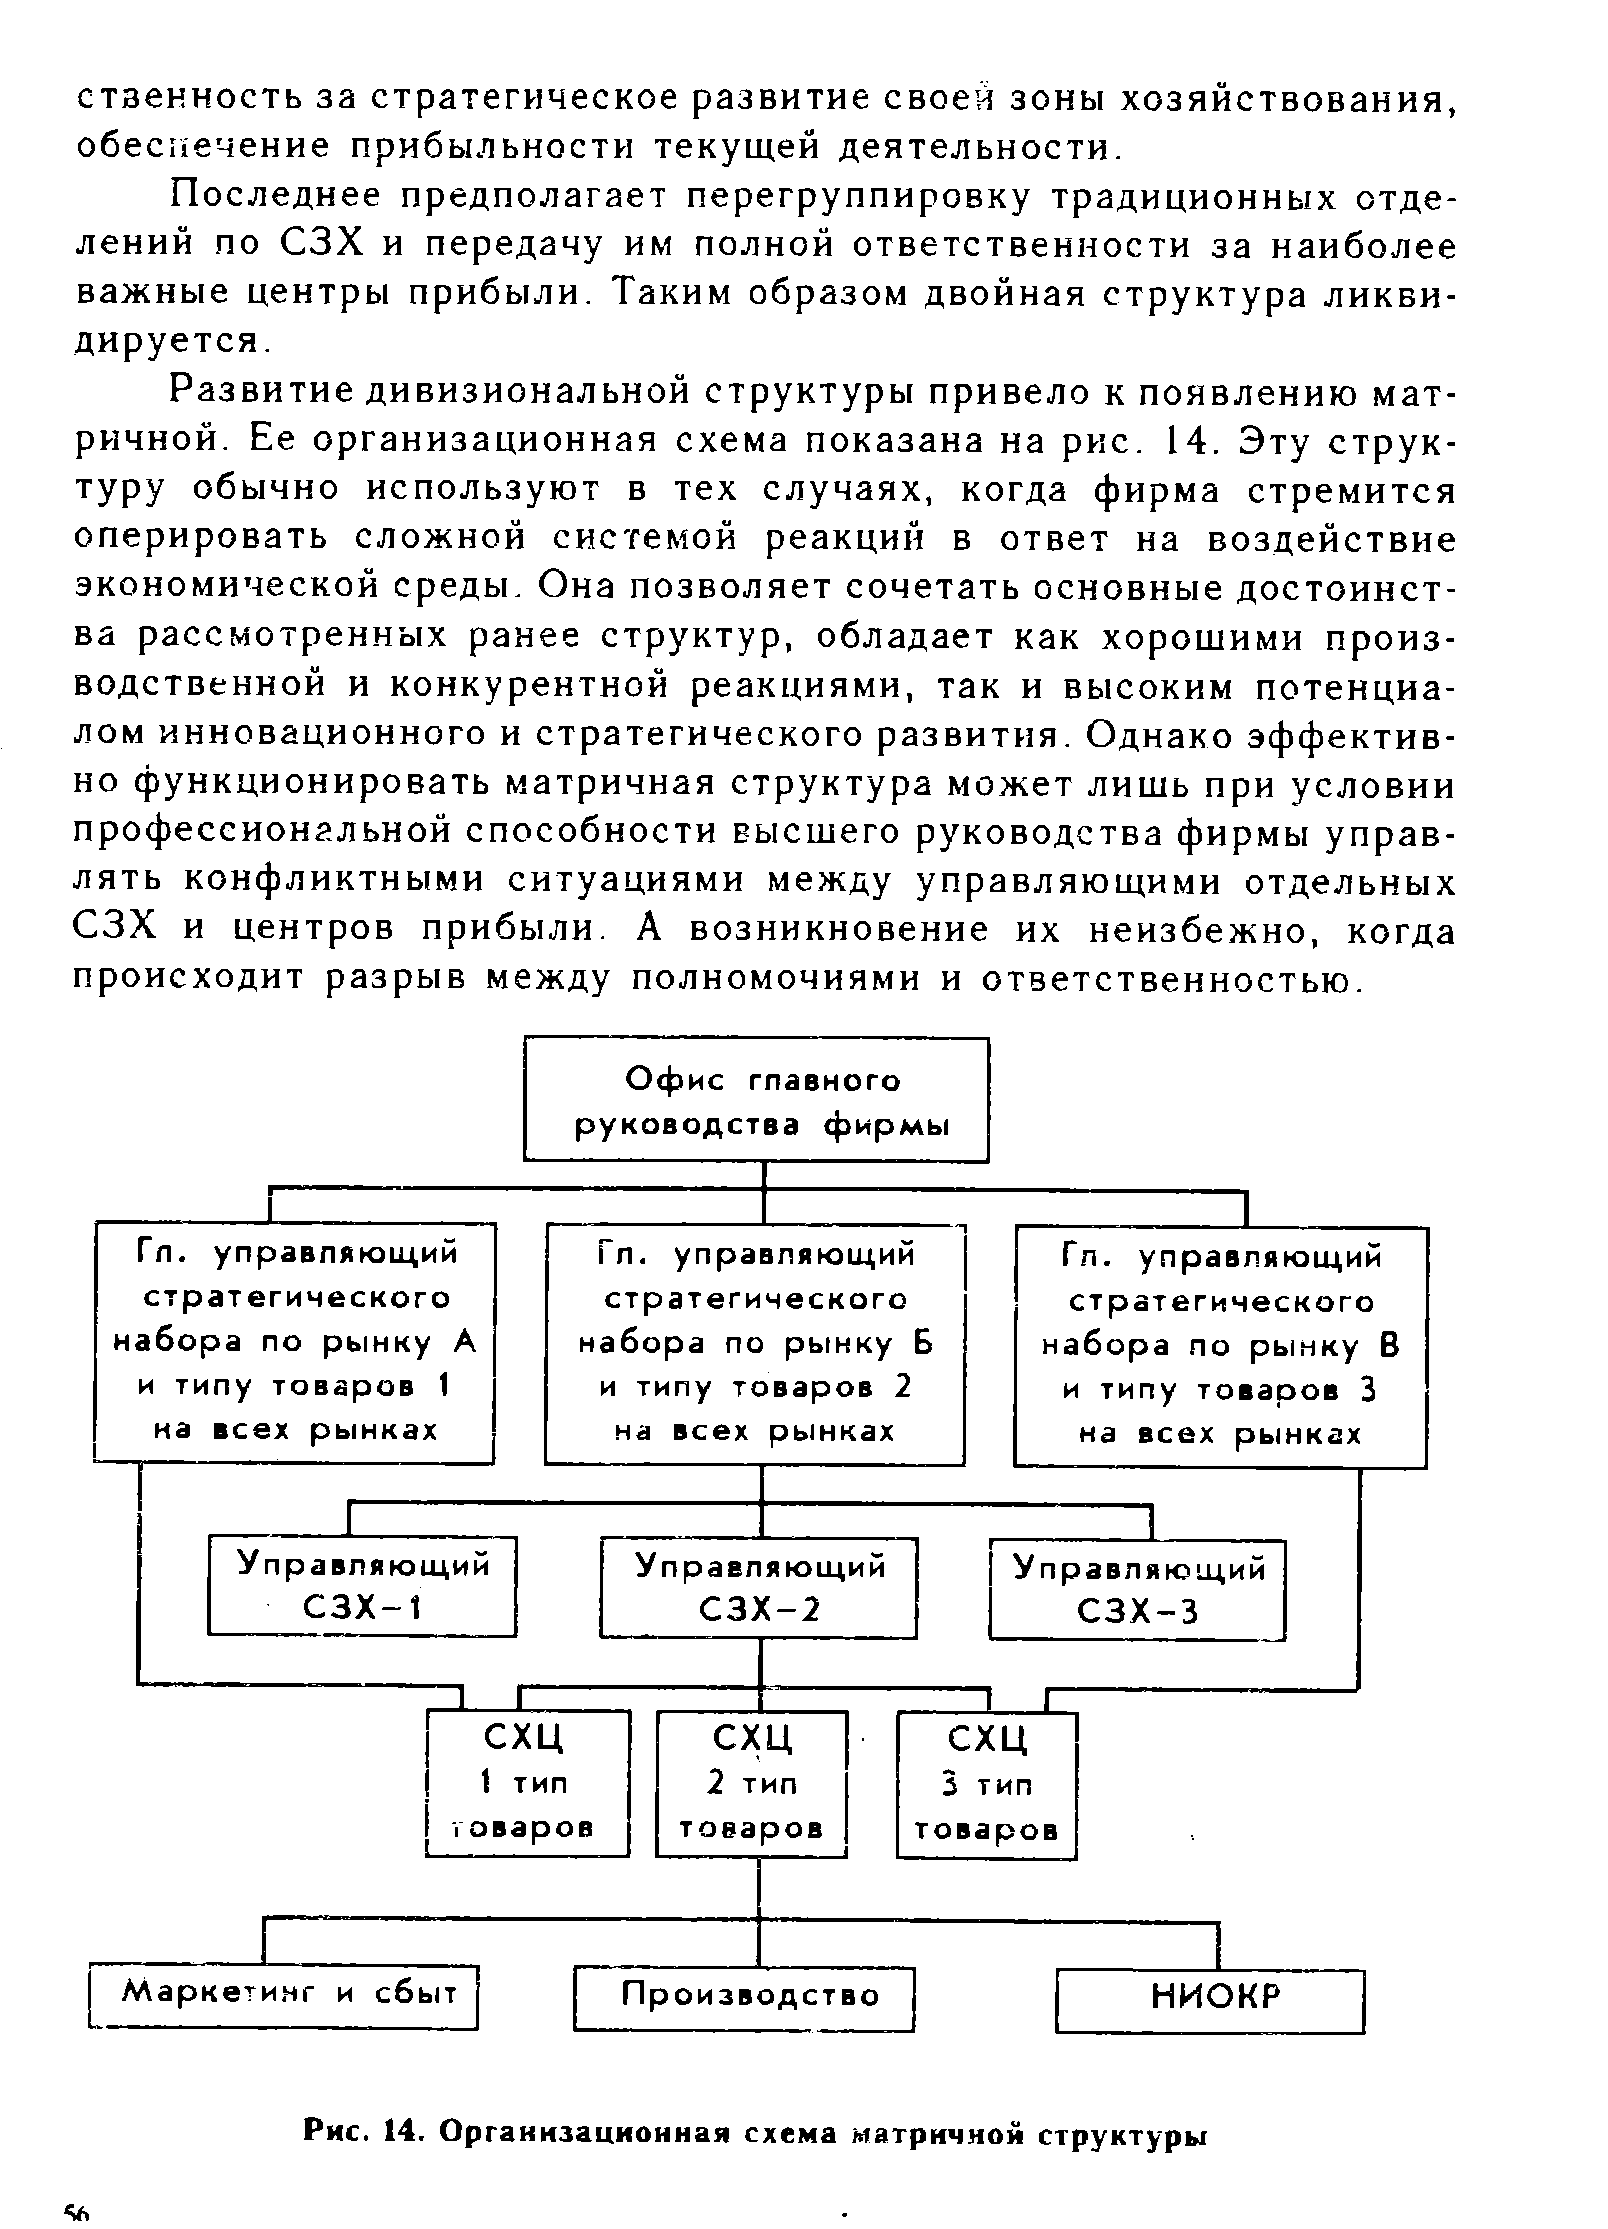 Рис. 14. Организационная схема матричной структуры
